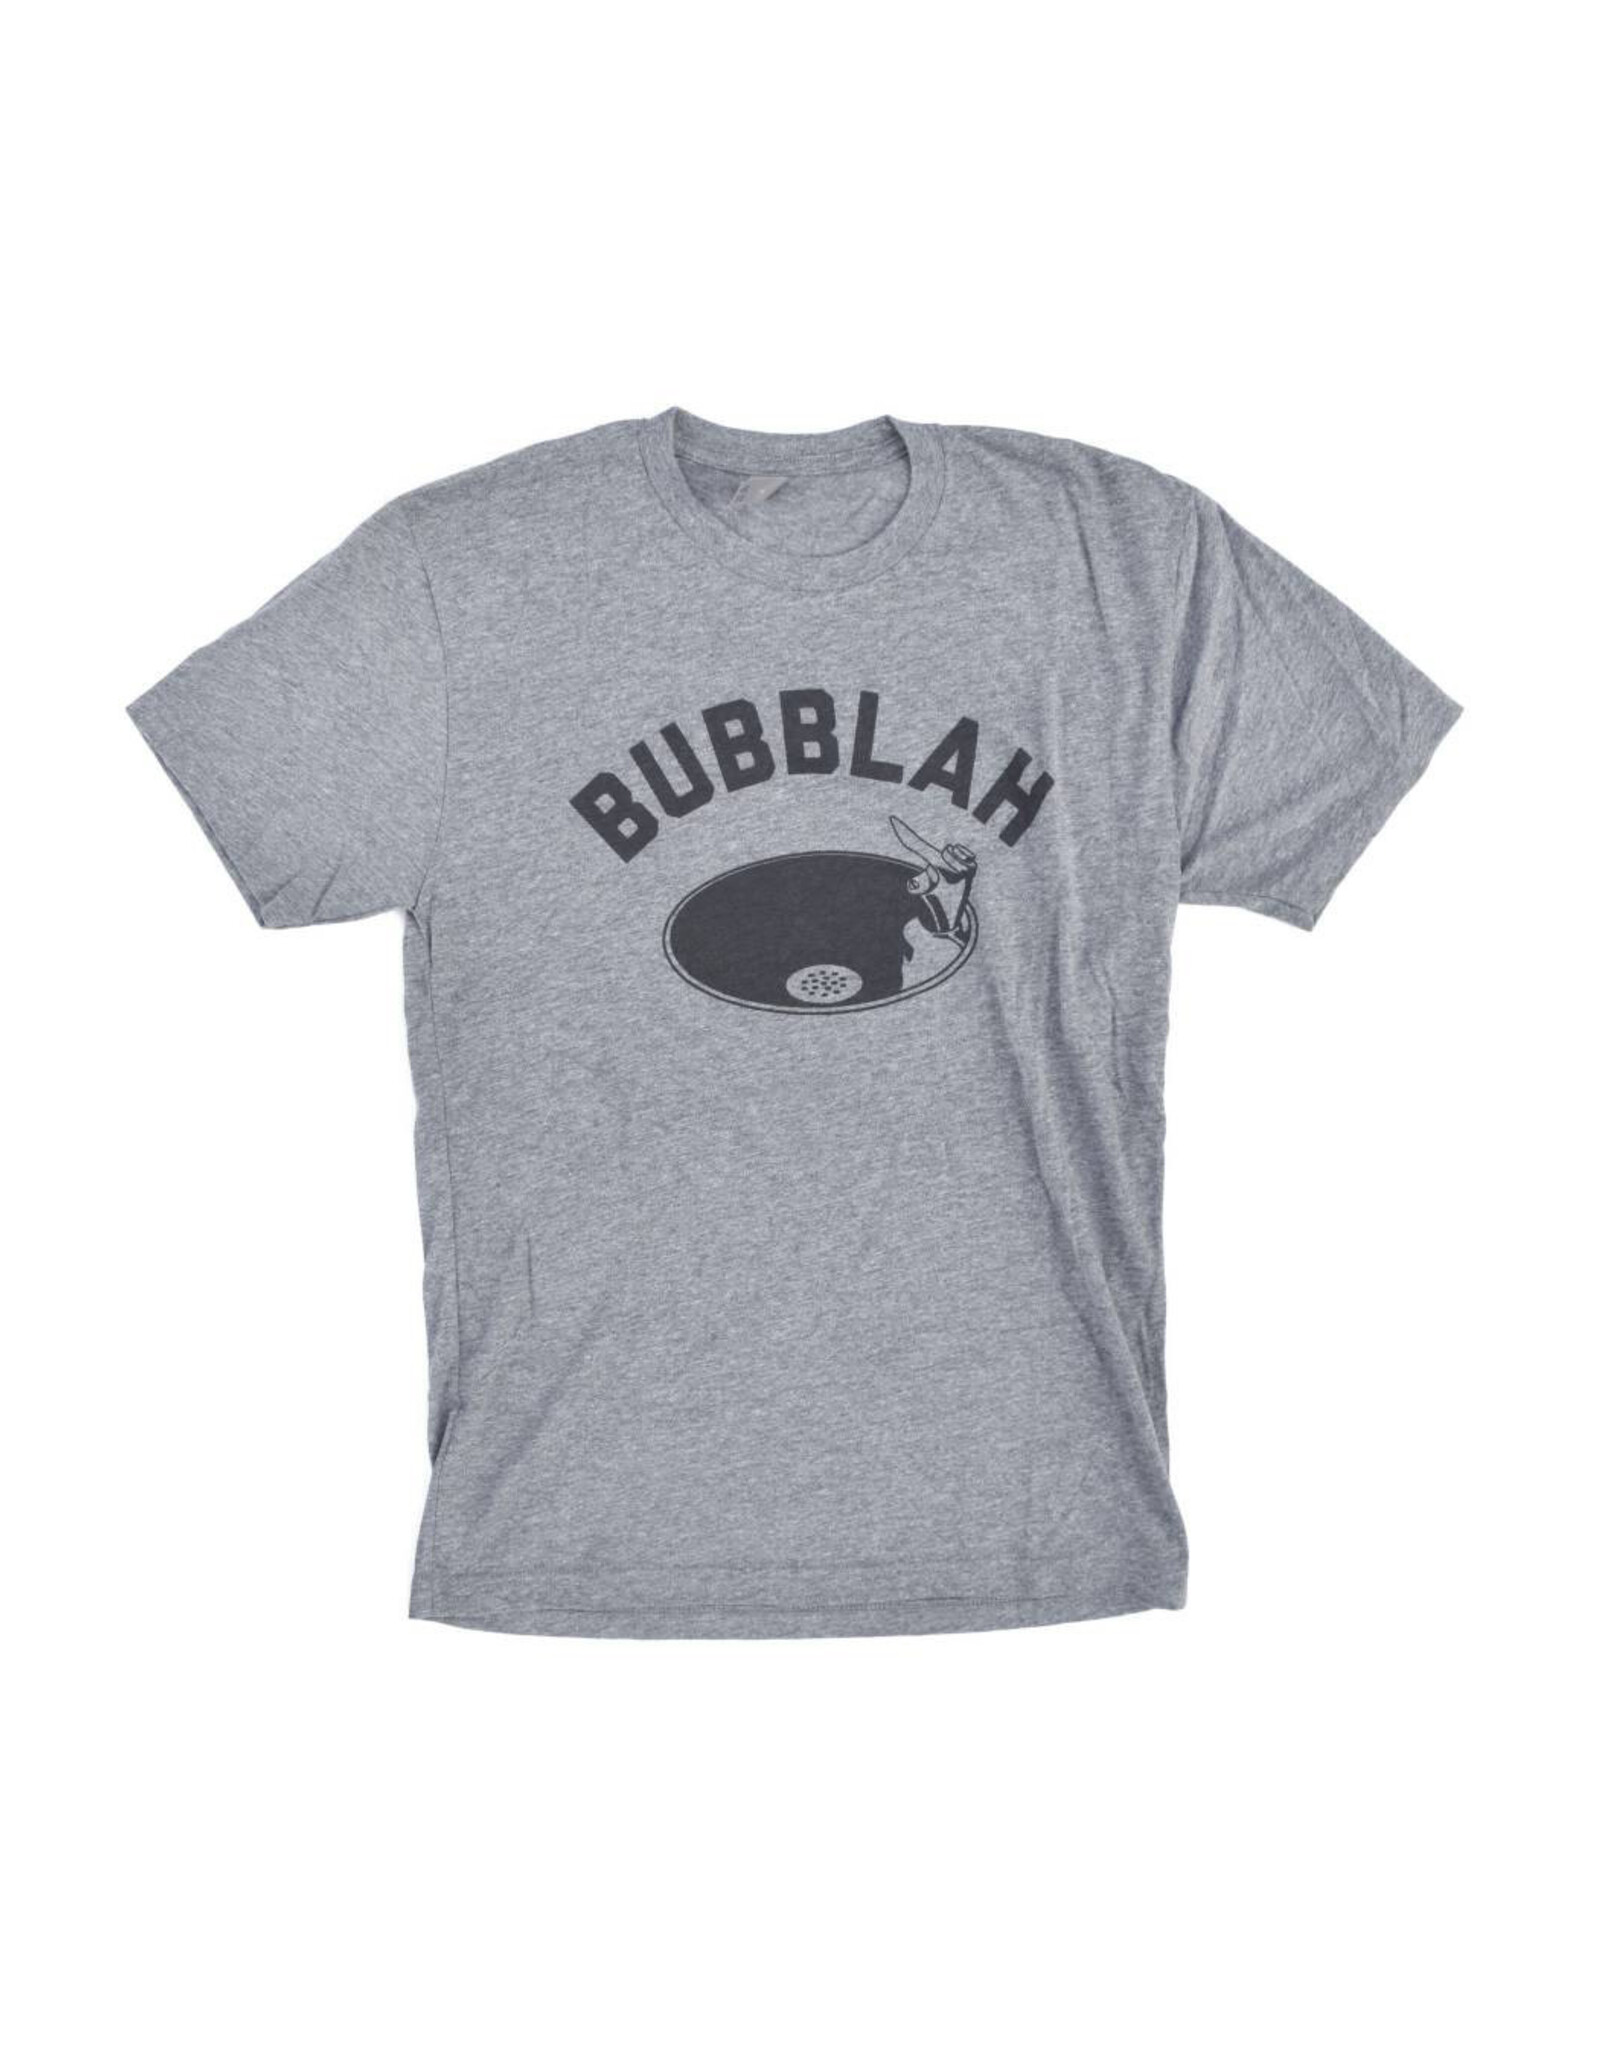 Bubblah Women's T-Shirt